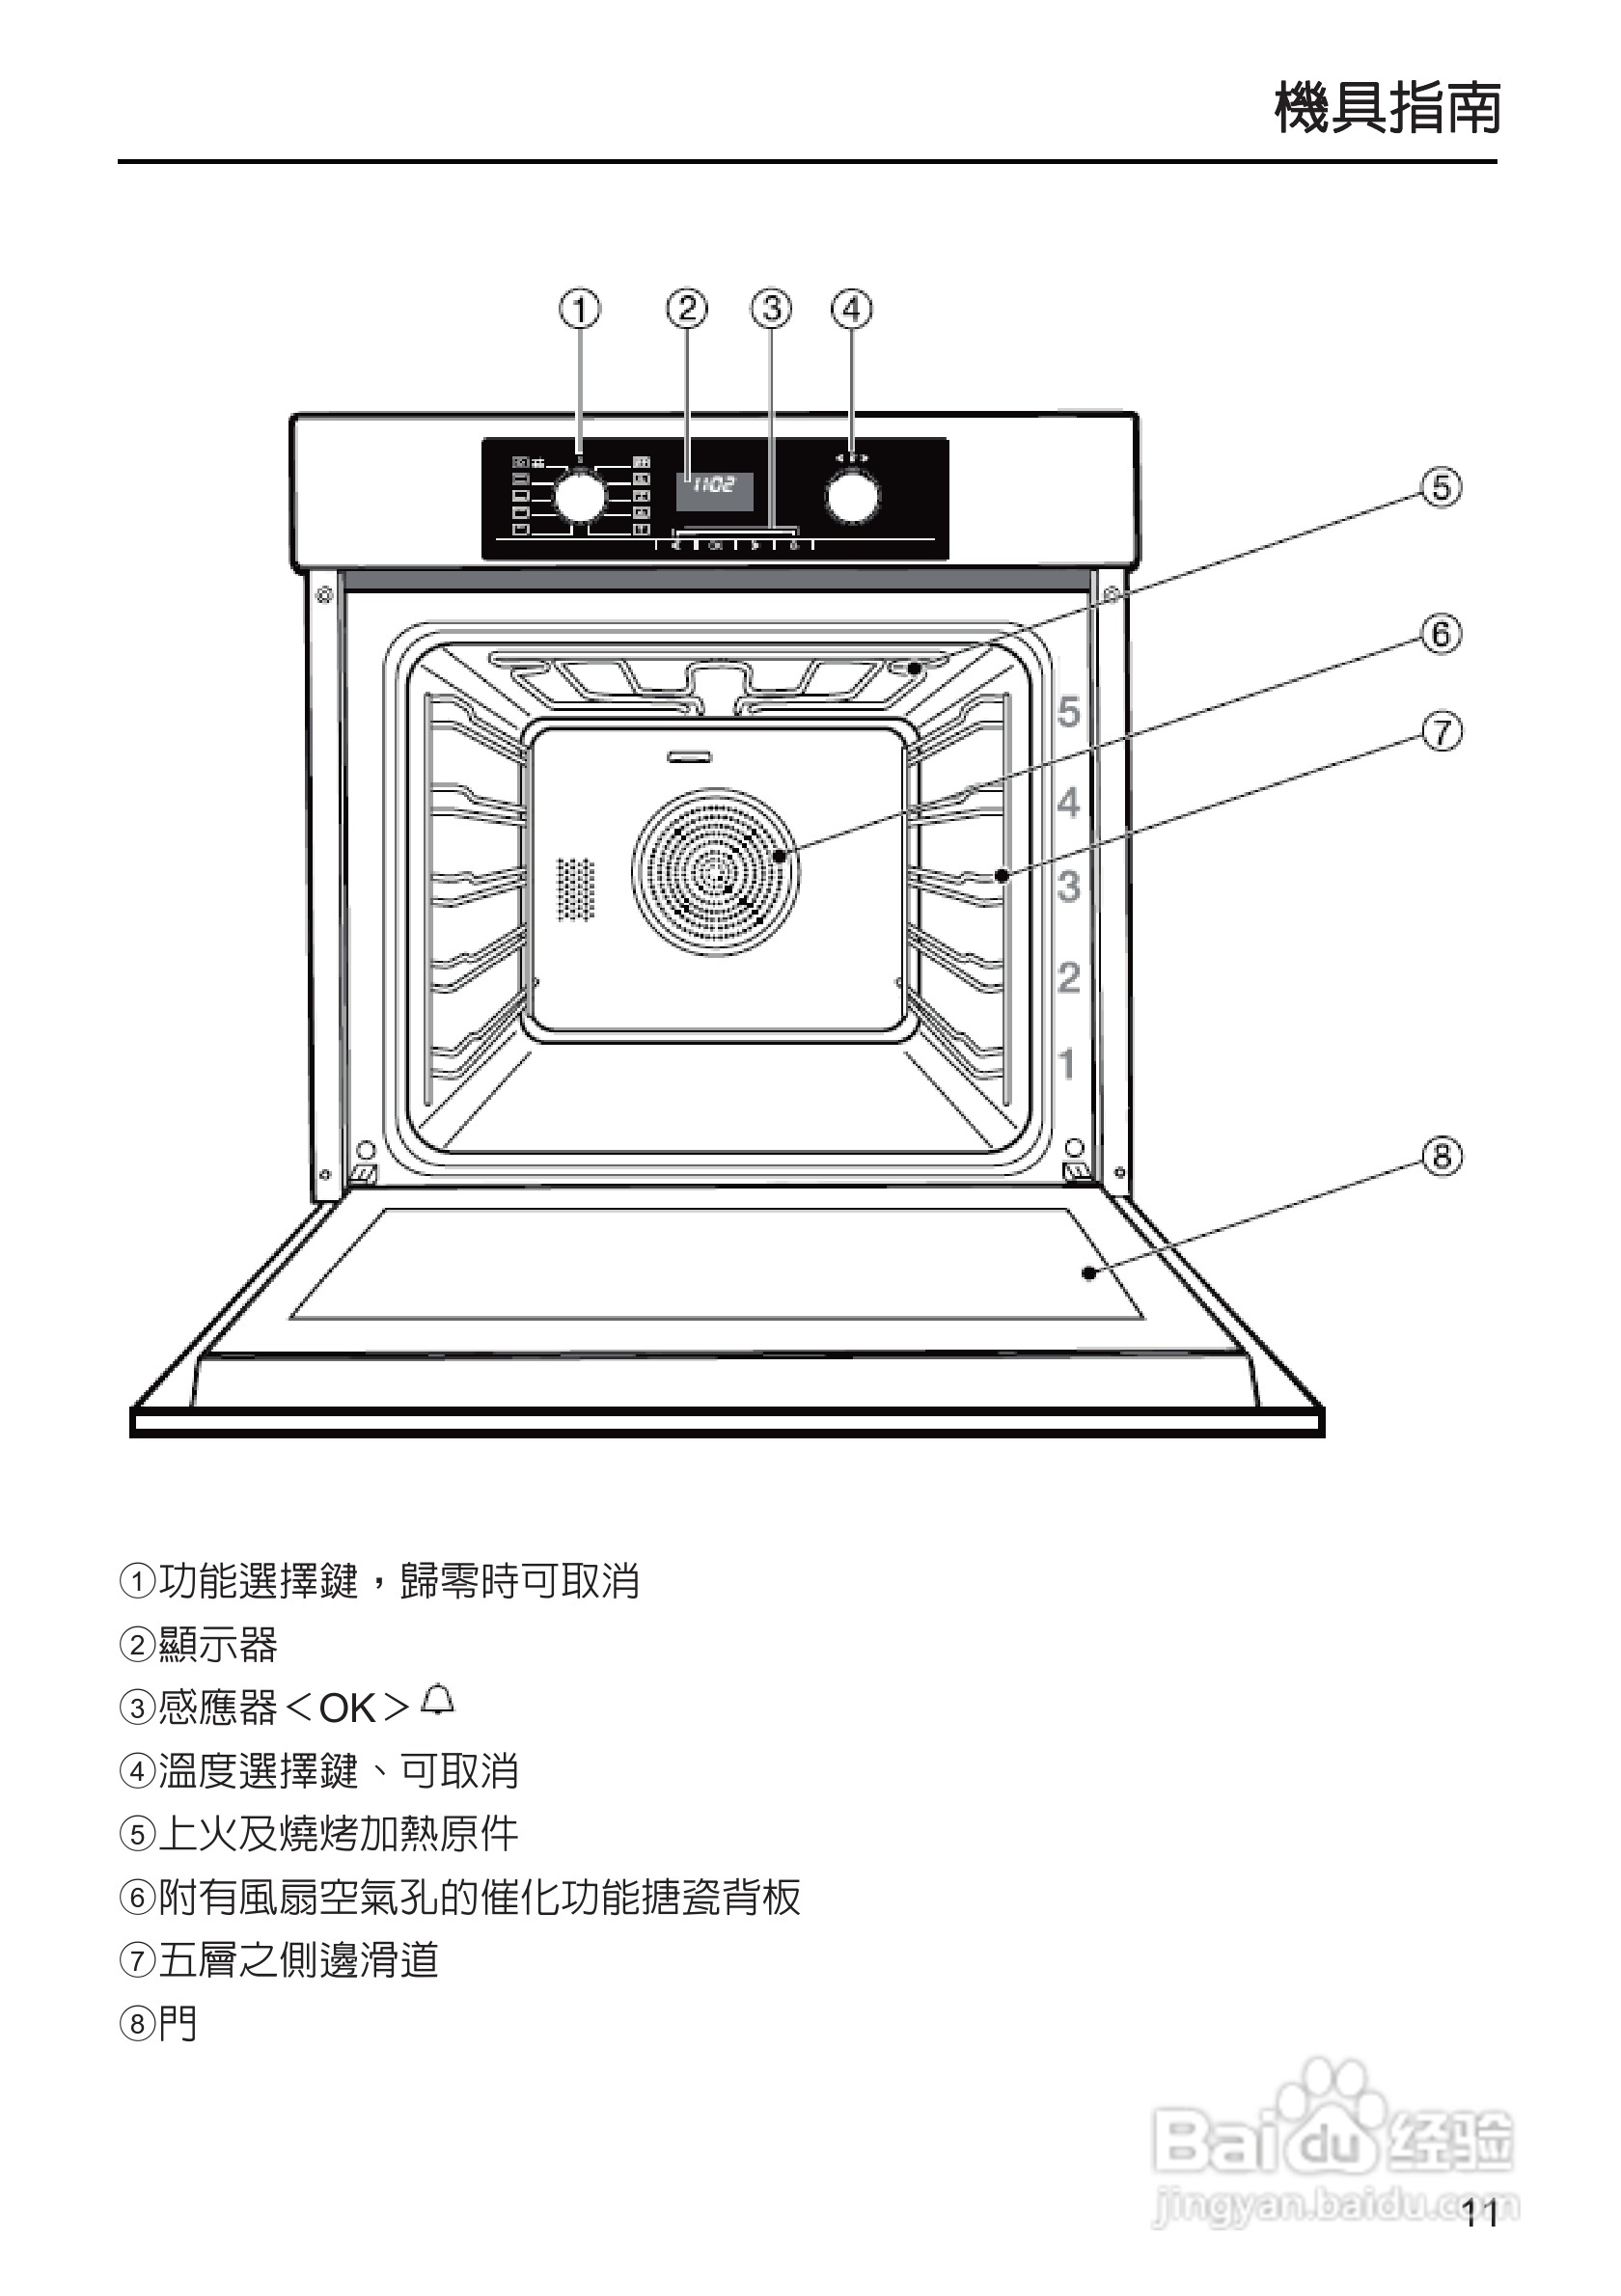 嵌入式烤箱图标解释图片